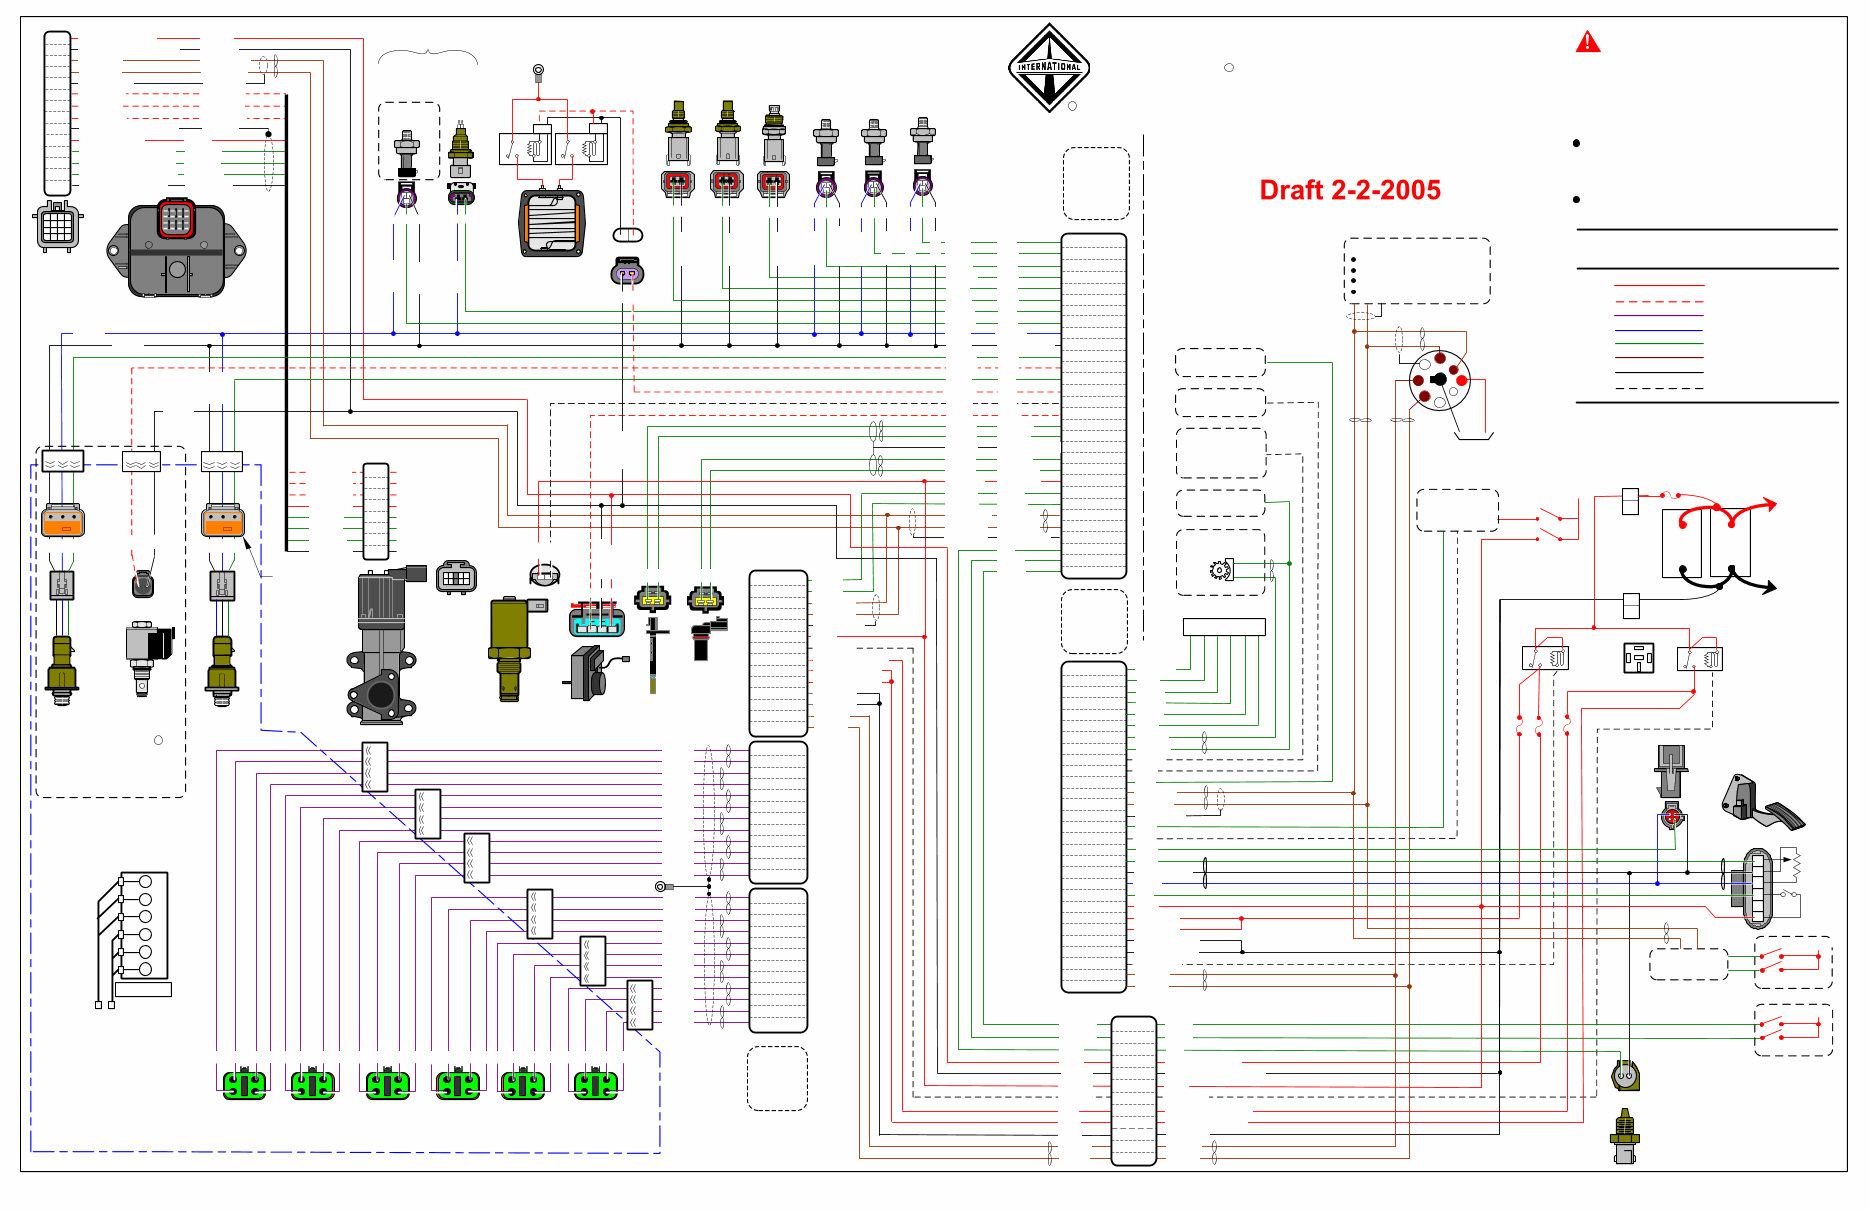 International DT466DT570HT570 Engine Electrical Diagram